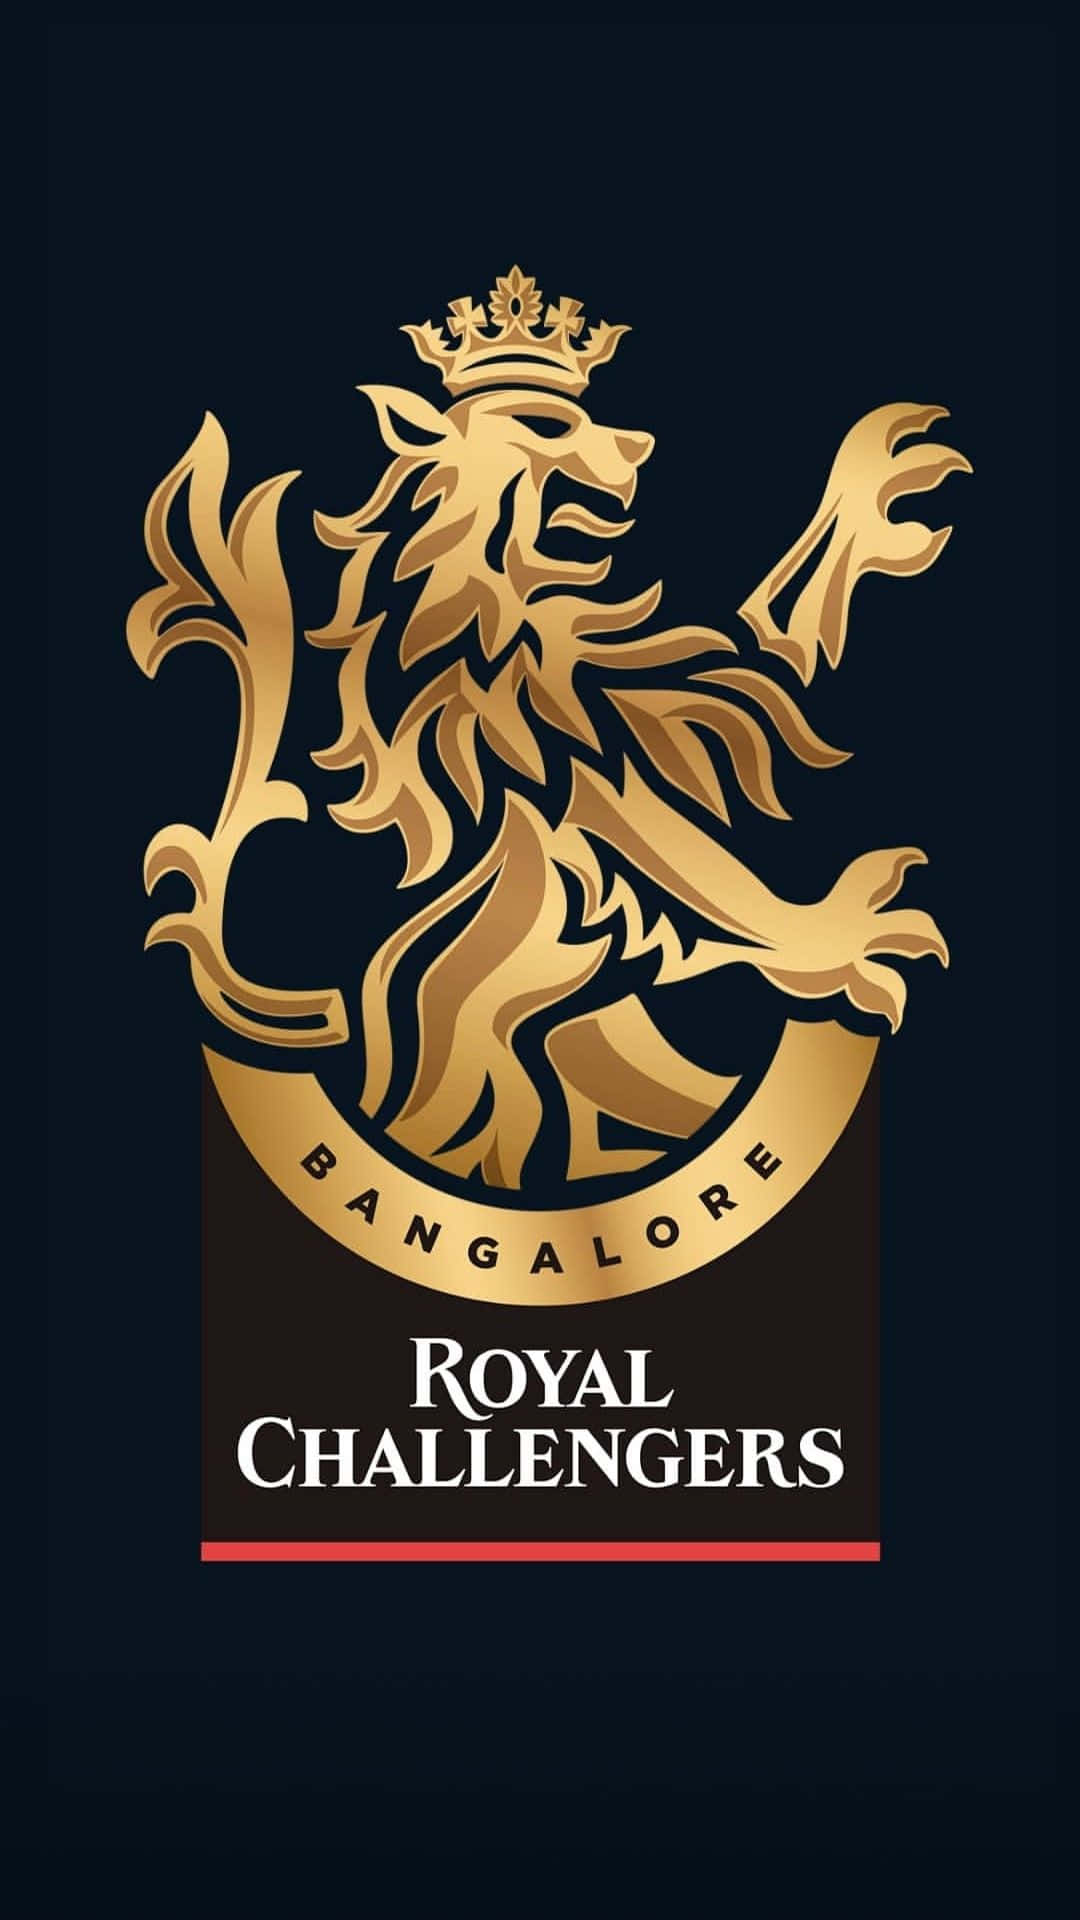 Logotipode Los Royal Challengers En Un Fondo Negro